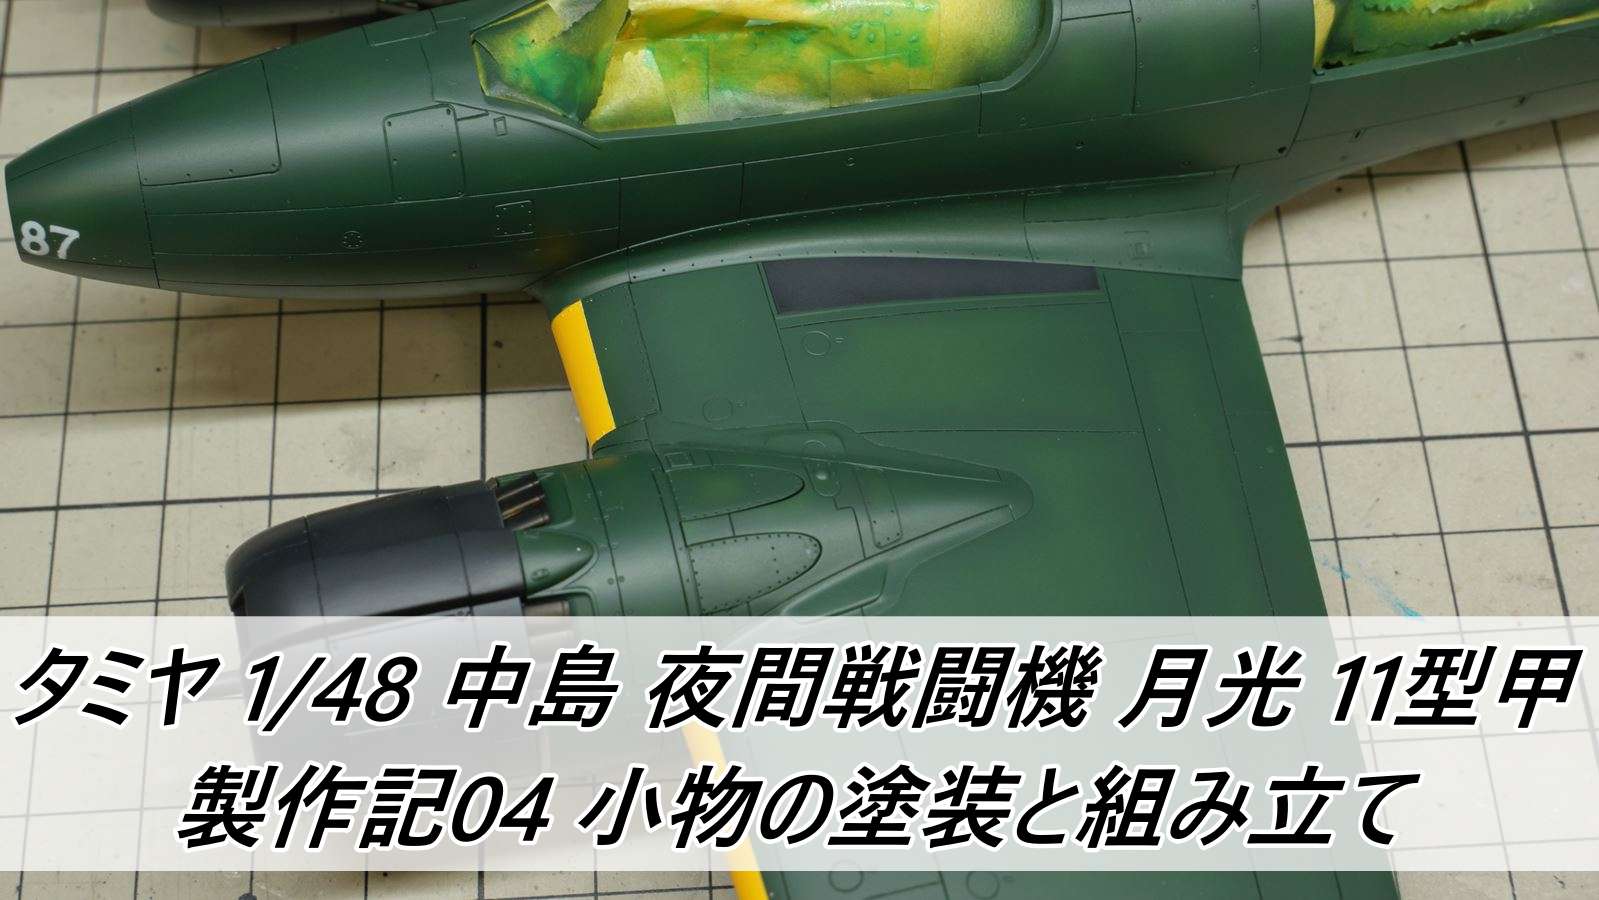 タミヤ 1 48 中島 夜間戦闘機 月光 11型甲 製作記05 ウェザリングと仕上げ 雑食プラモ備忘ログ